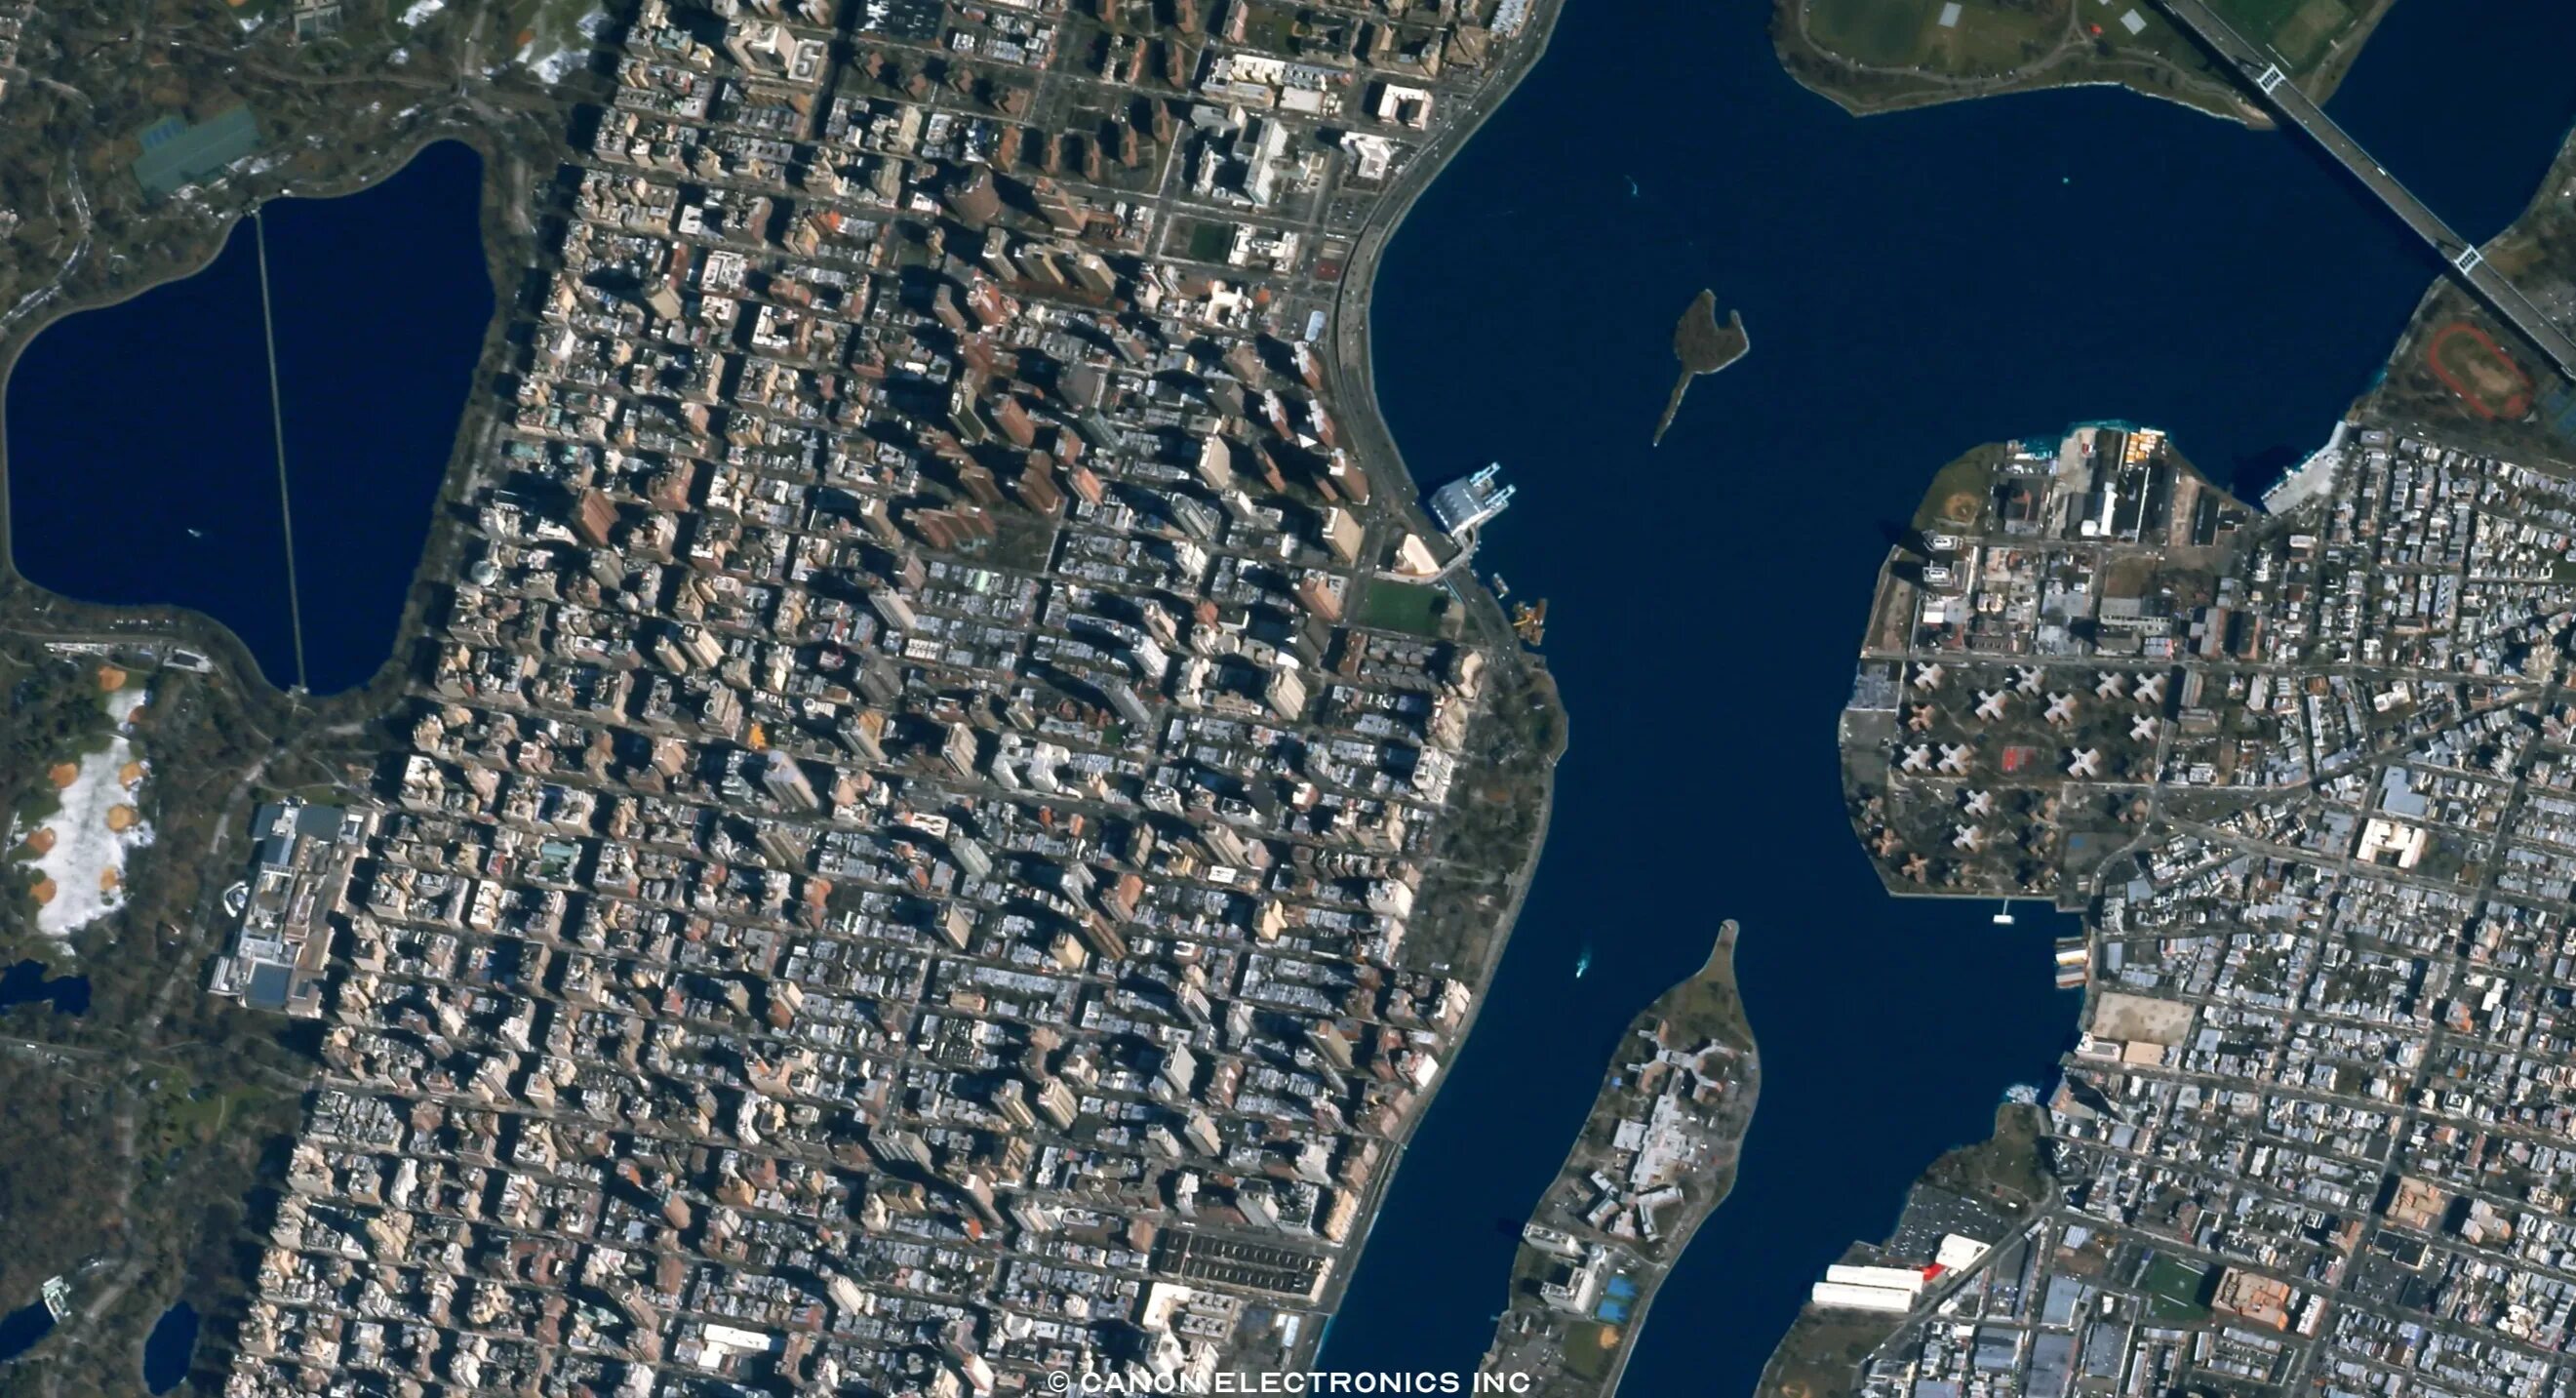 Чебоксары в реальном времени. Нью Йорк 1970 со спутника. Снимки со спутника в реальном времени. Титаник вид со спутника. Камера со спутника в реальном времени.